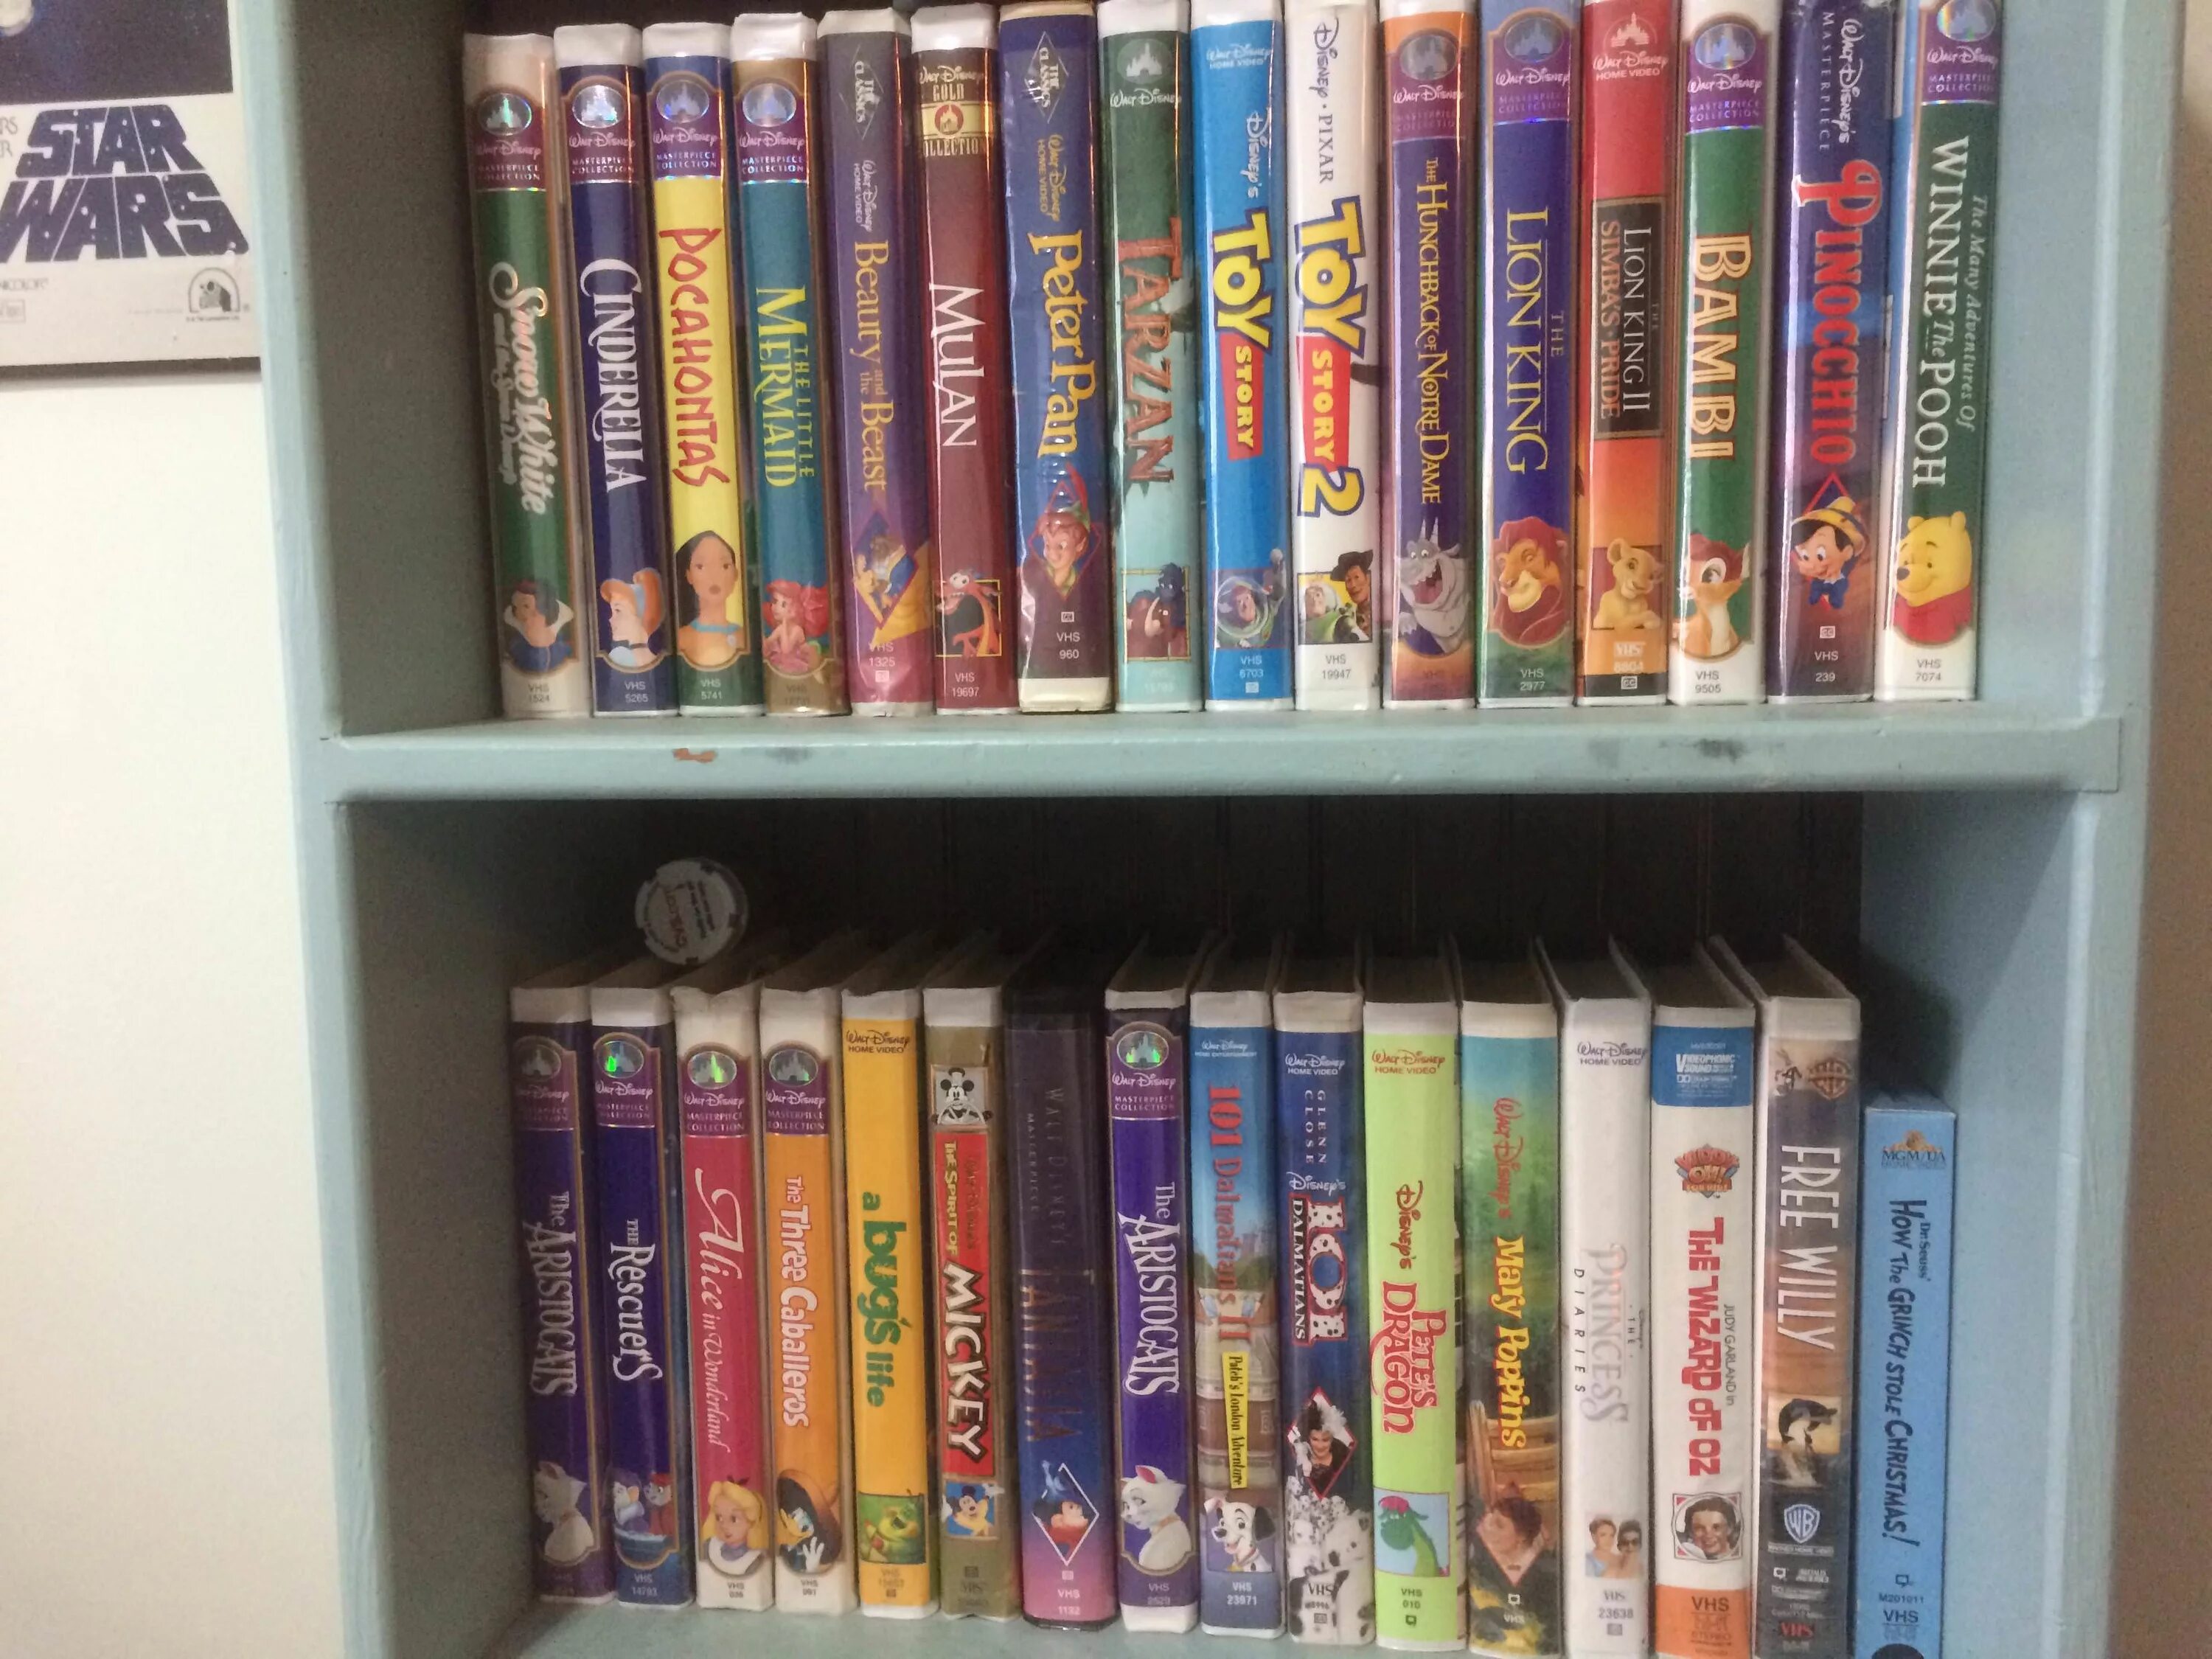 Disney VHS. Disney VHS collection. VHS кассеты коллекция. Стеллажи коллекция VHS.